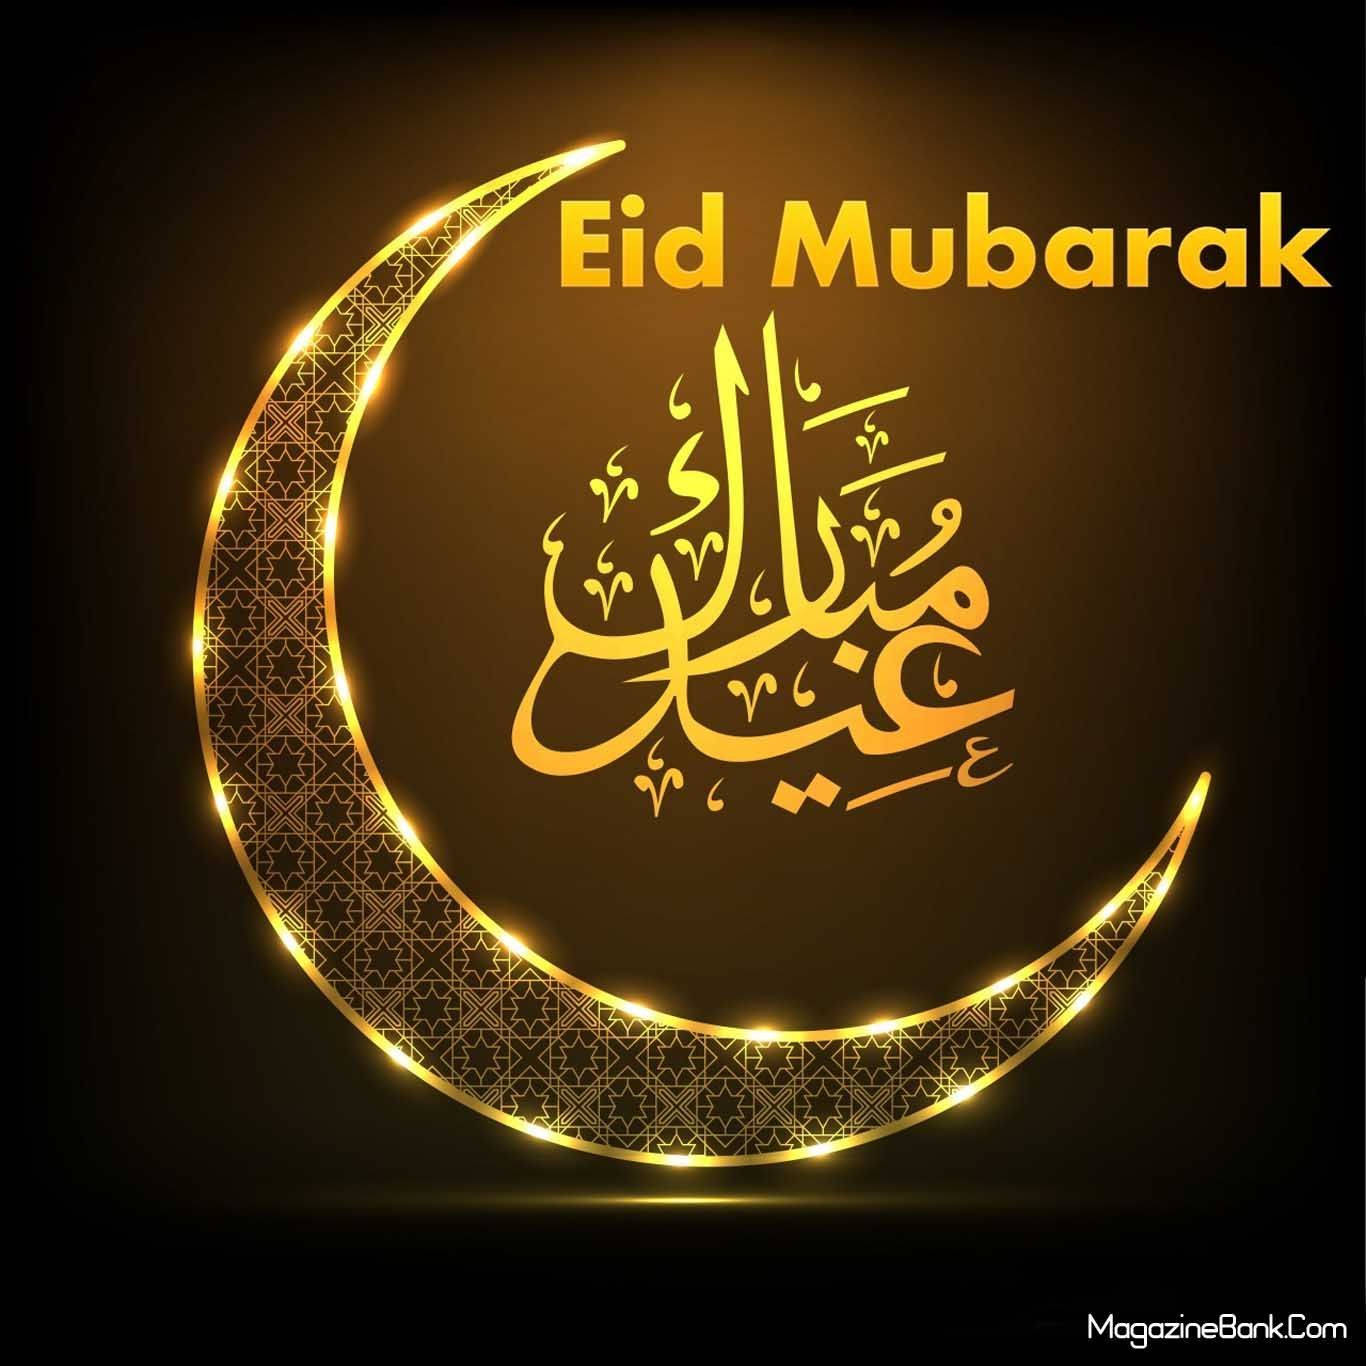 Celebrating Eid Mubarak - The Festival Of Blessings Background